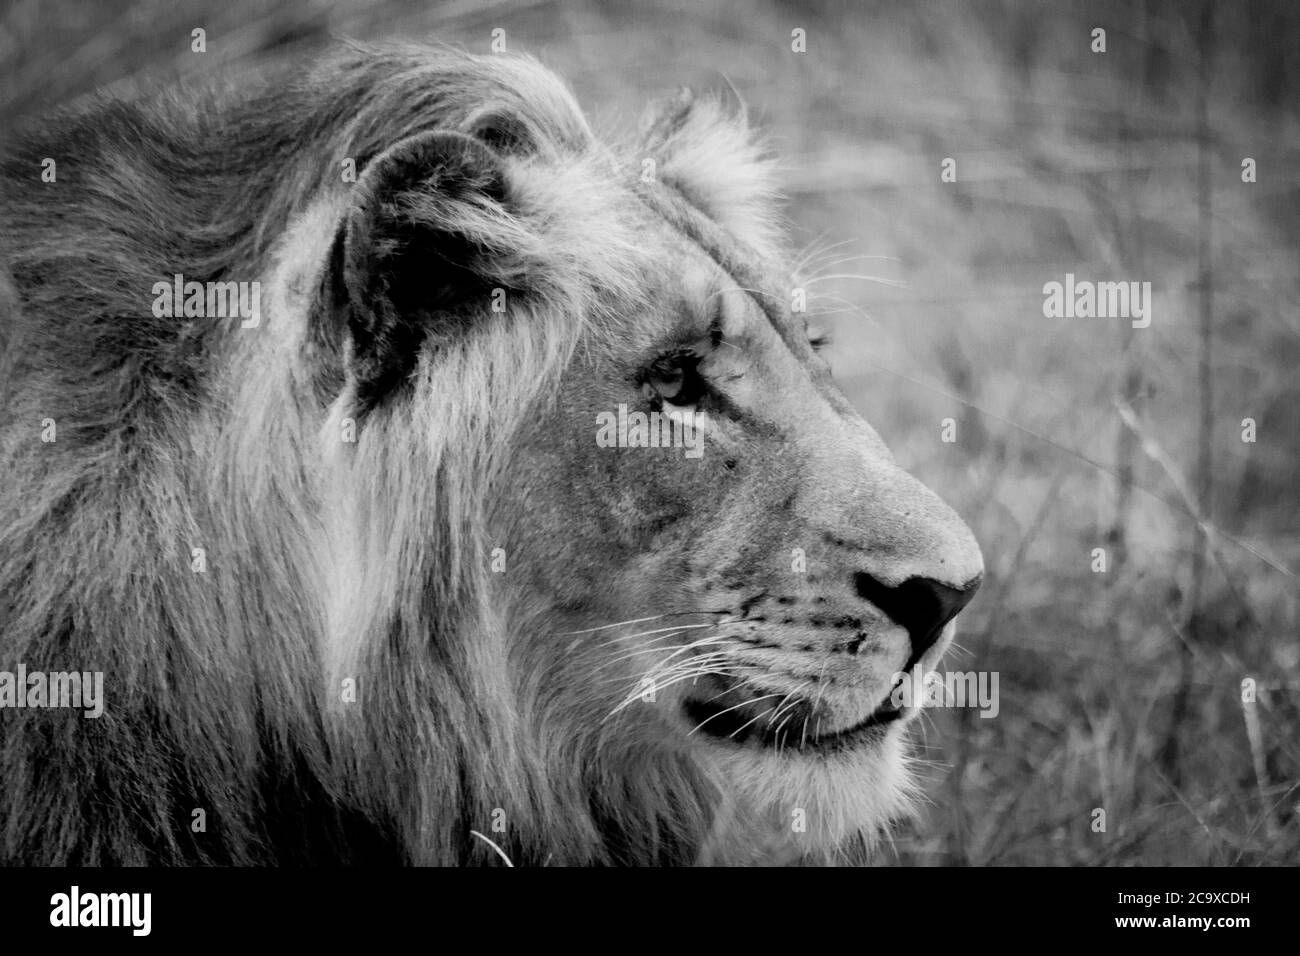 Gros plan de la tête d'un jeune lion dans la savane africaine où l'on voit la manie en développement (noir et blanc). Banque D'Images